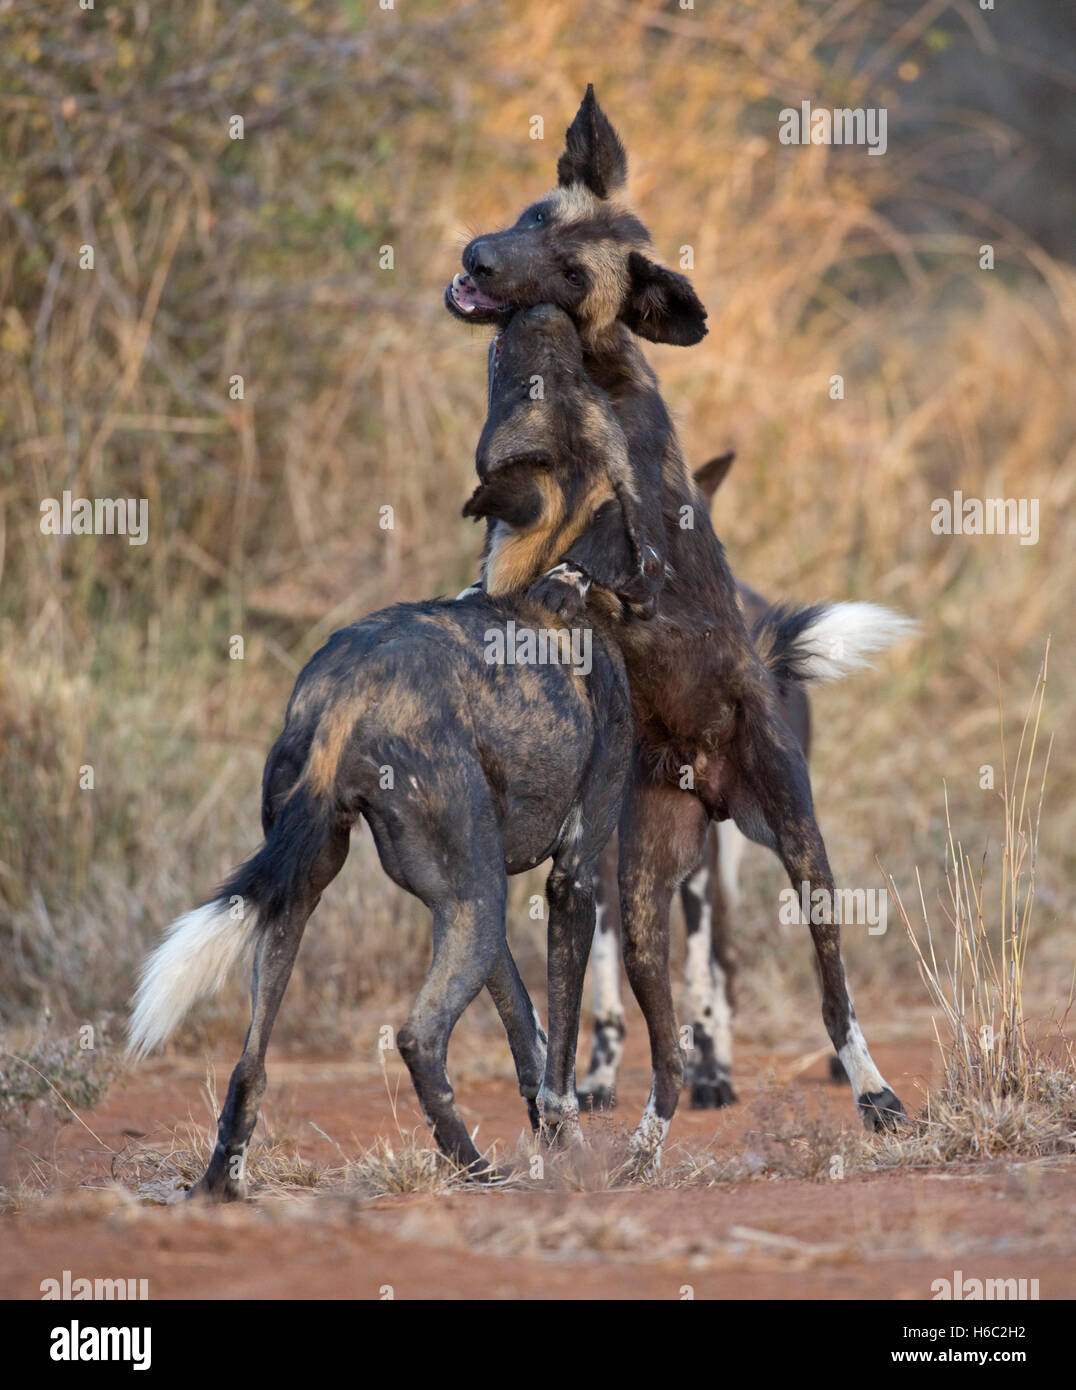 Les chiens sauvages d'Afrique sauvage de Laikipia au Kenya Nanyuki jeu Banque D'Images